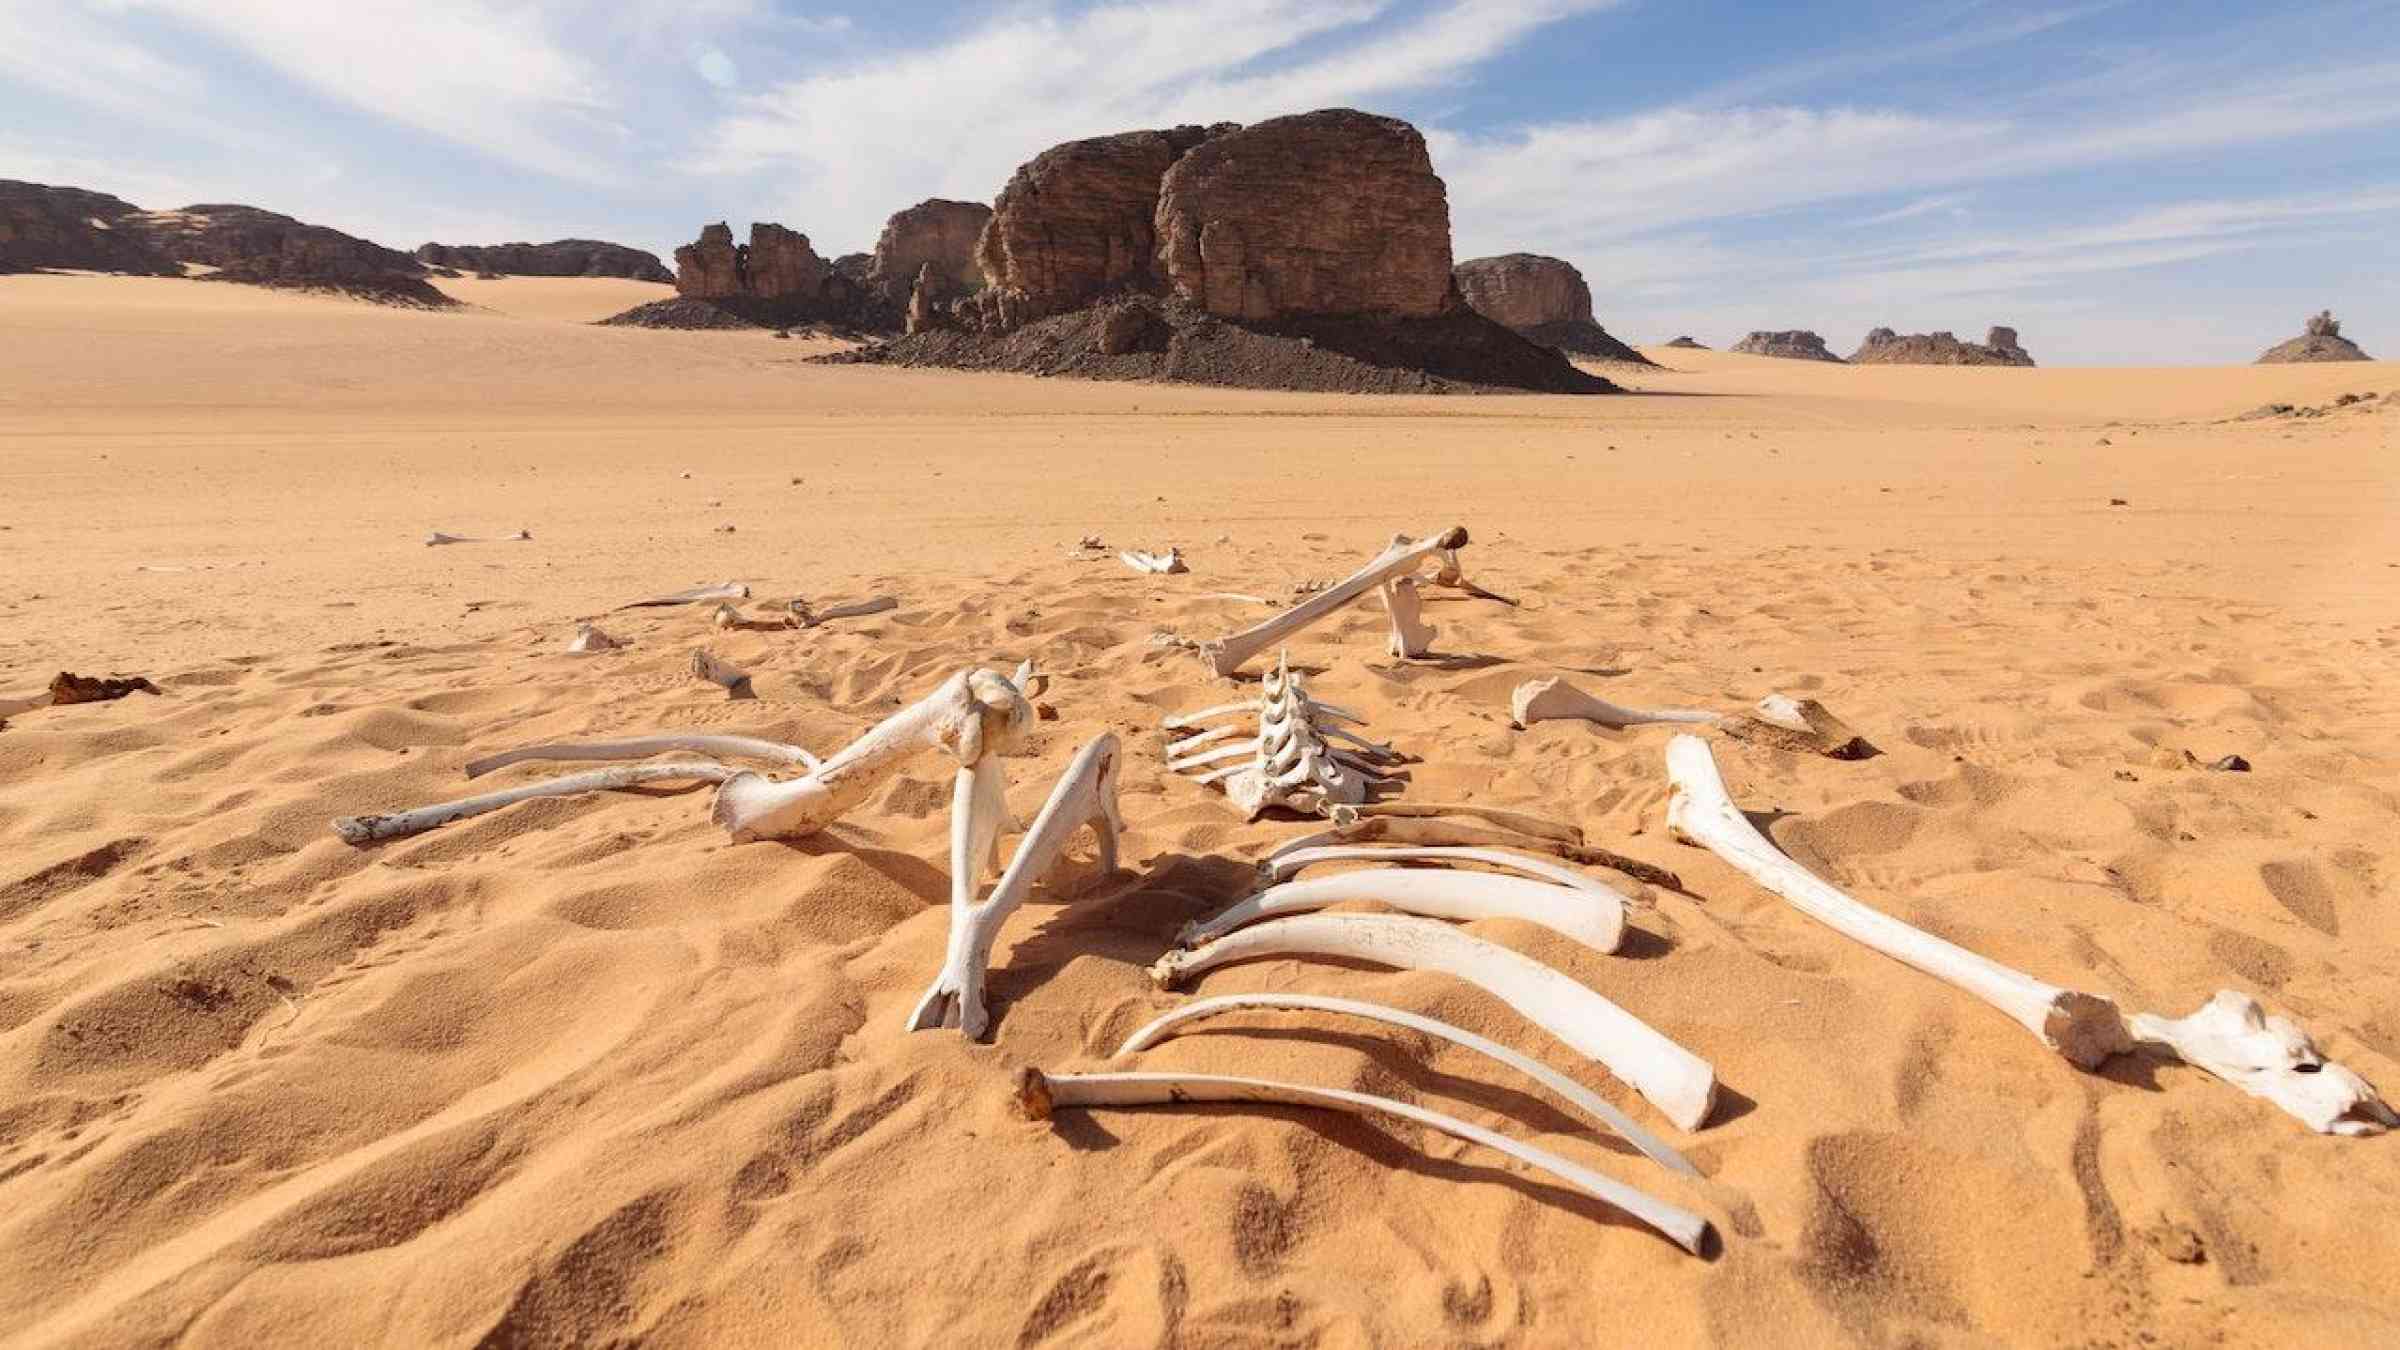 Animal skeleton in the desert